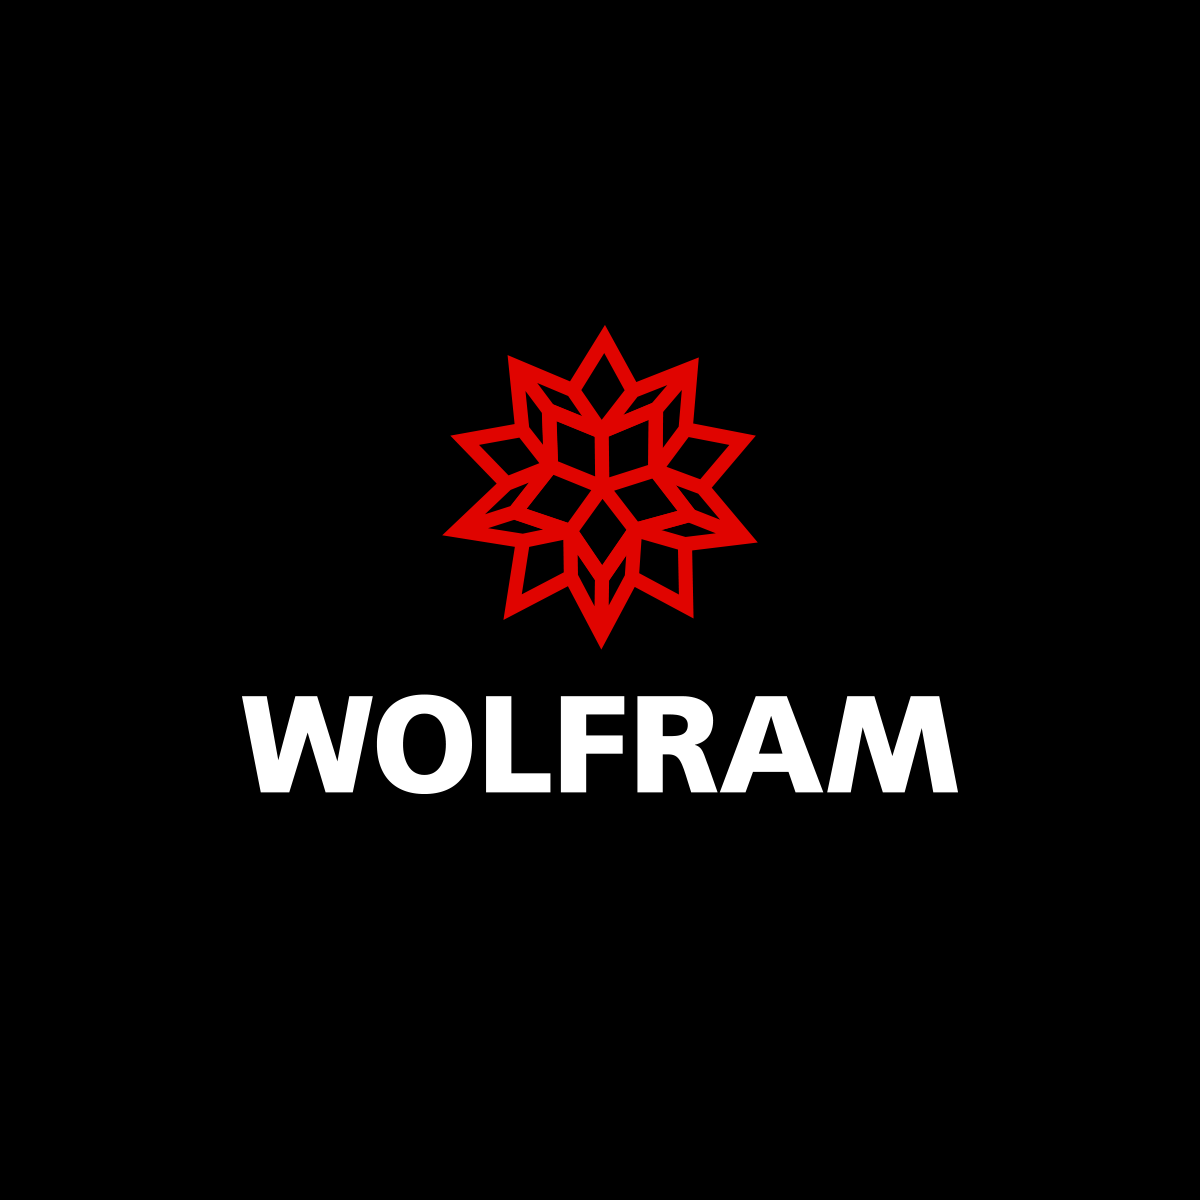 www.wolfram.com